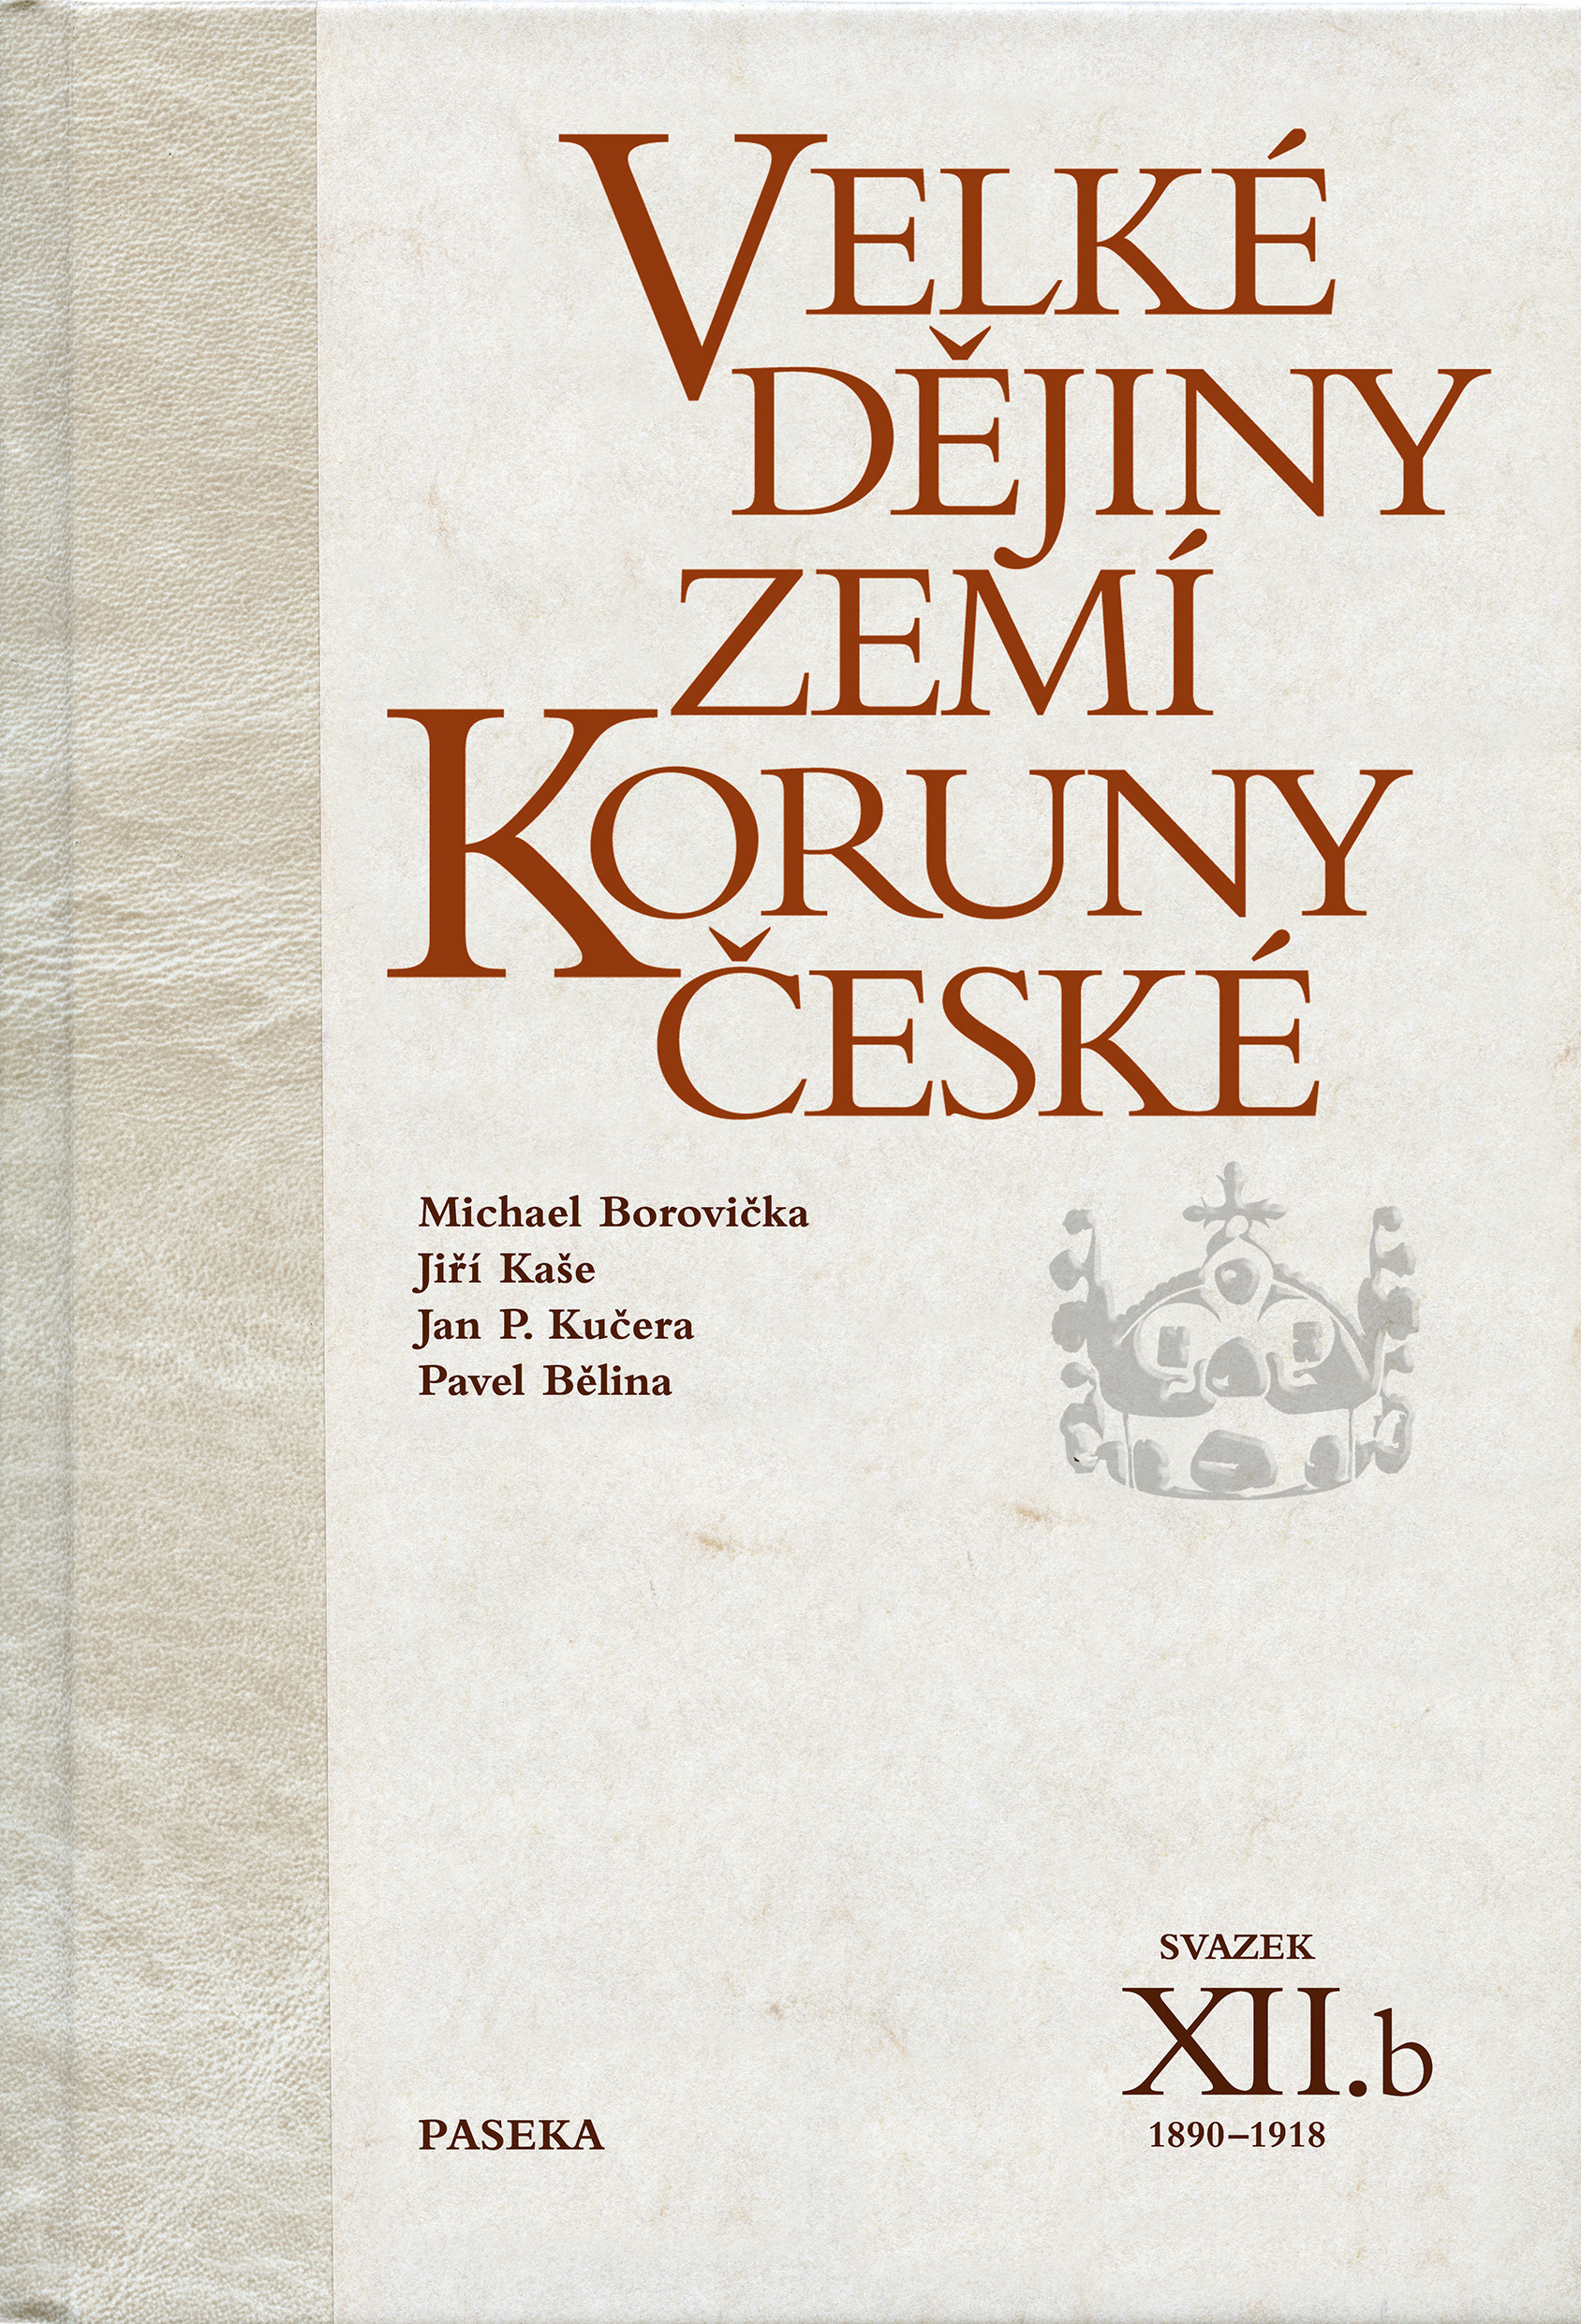 Velké dějiny zemí Koruny české XII./b (1890-1918)